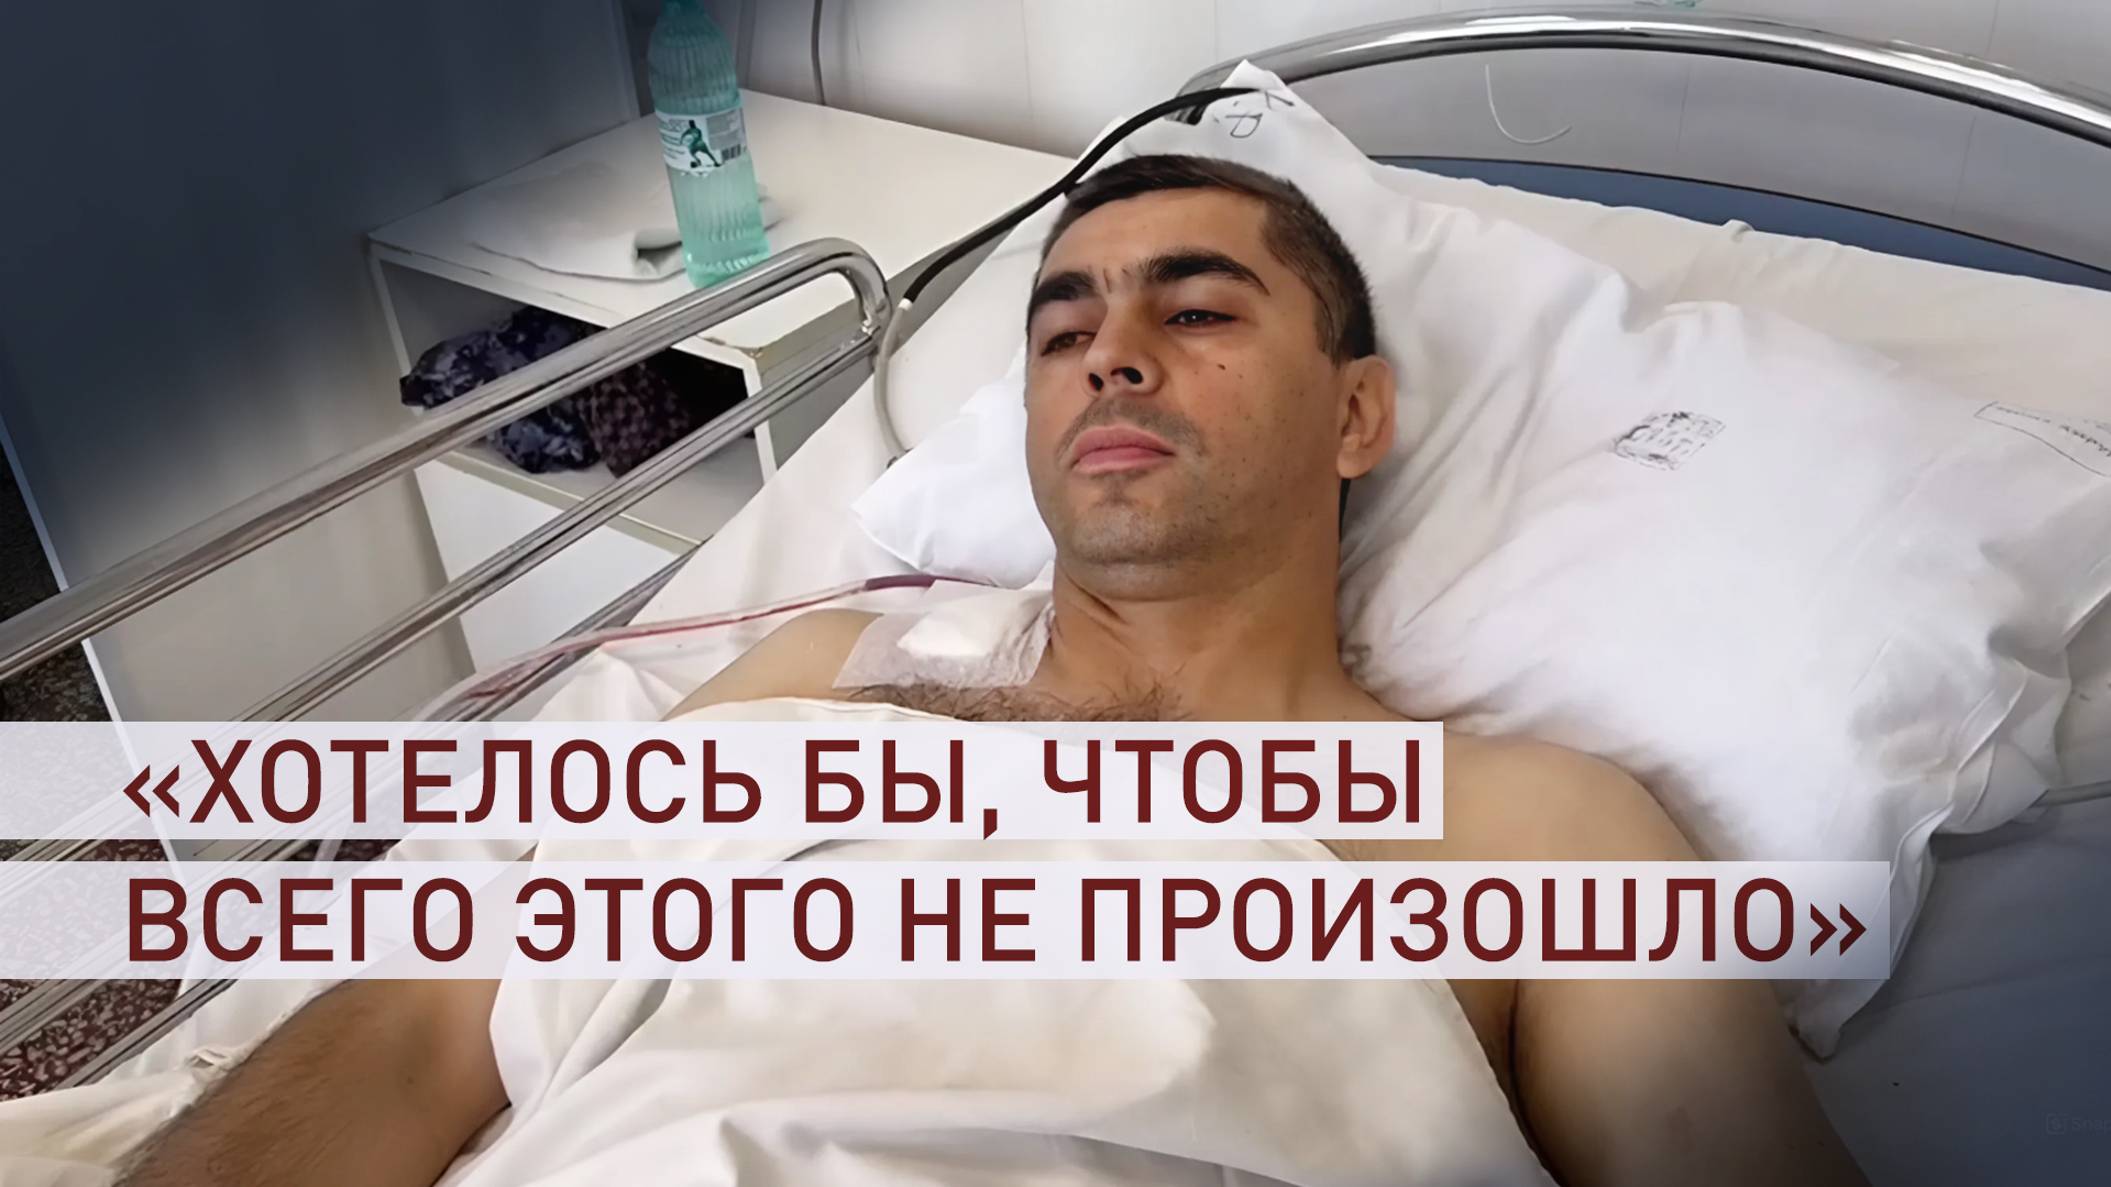 «Старались максимально помочь гражданским»: раненый сотрудник Росгвардии — о КТО в Дагестане